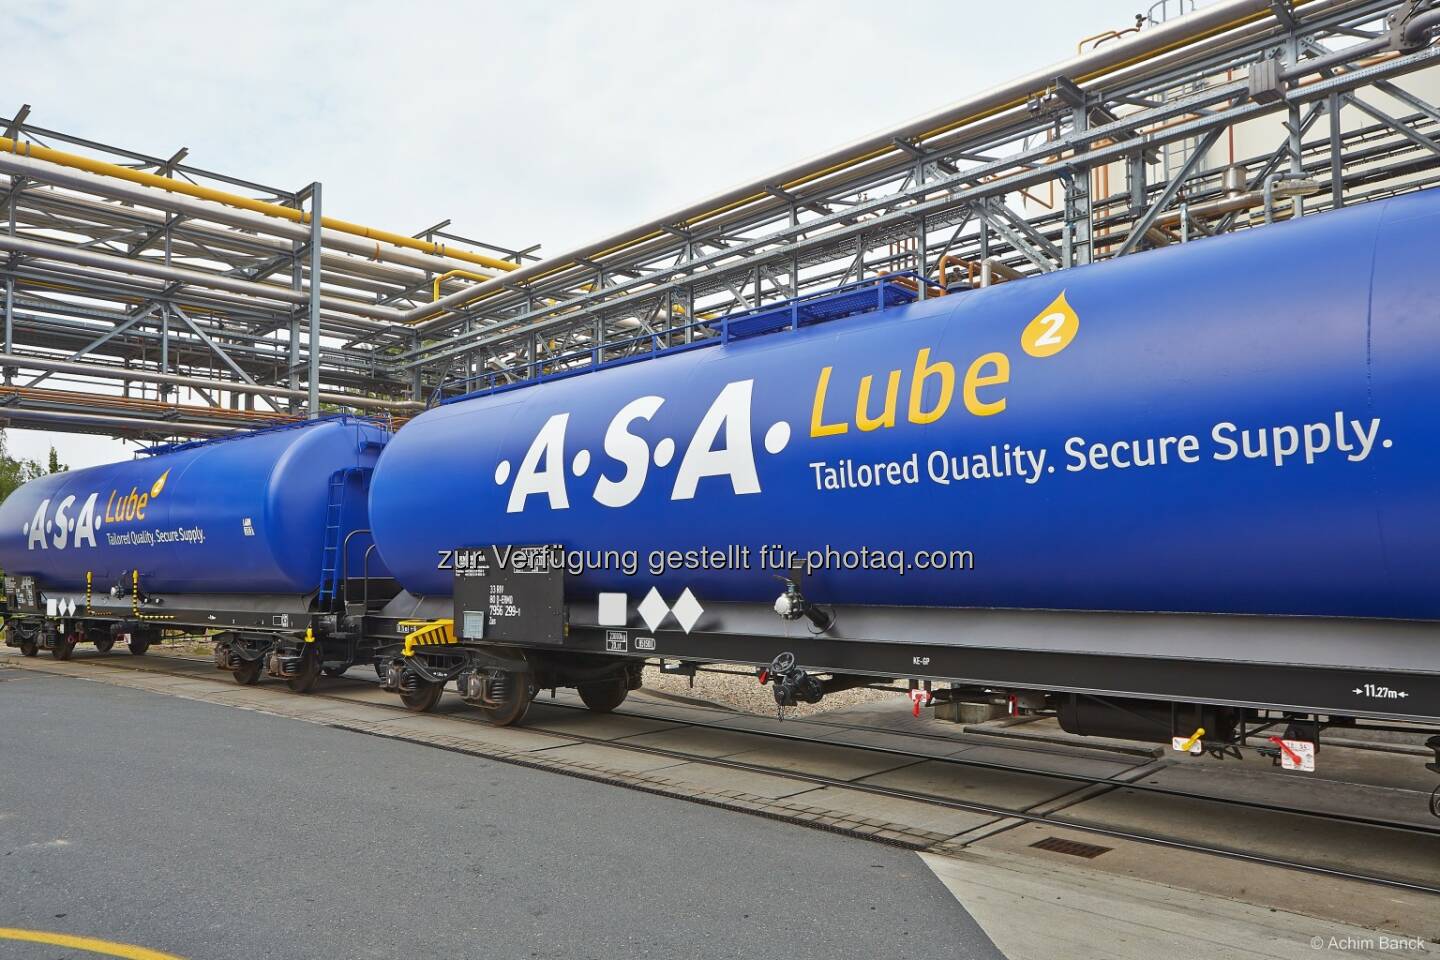 .A.S.A. Abfall Service schafft mit .A.S.A. Lube eine Sekundärrohstoff-Marke für Altöl / Urban Mining statt Recycling - Werte aus dem Abfall holen: neue Kesselwägen für den Transport